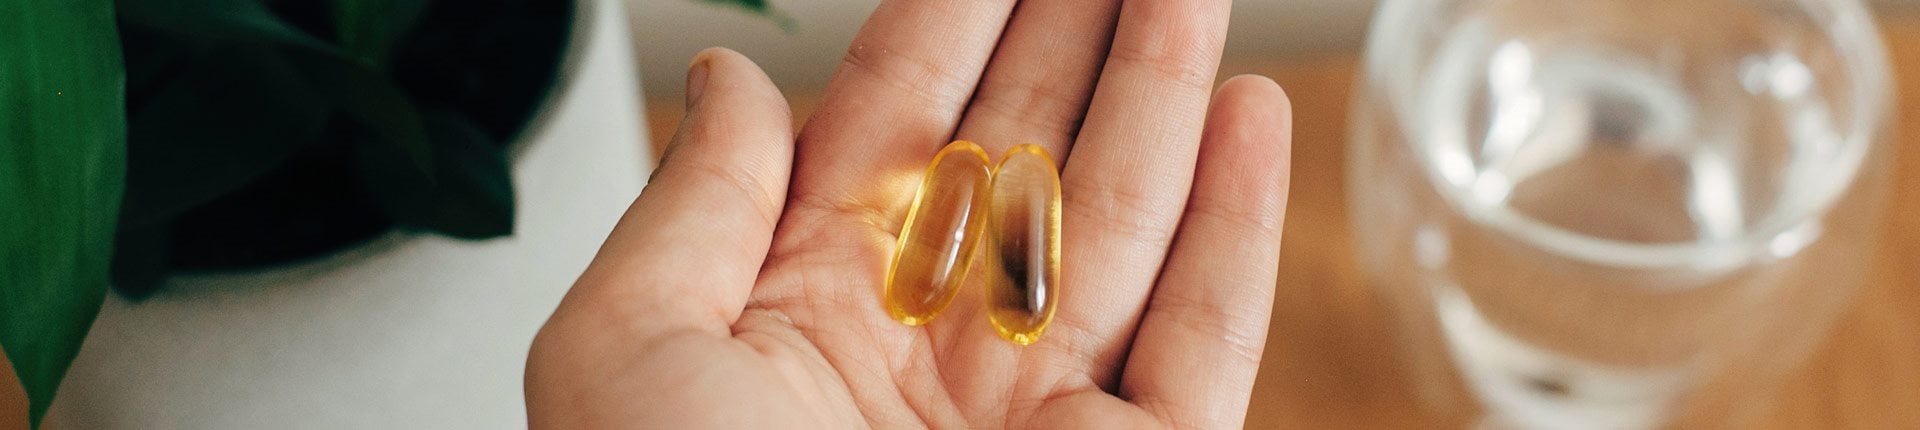 Z czym najlepiej łączyć kwasy omega-3? 